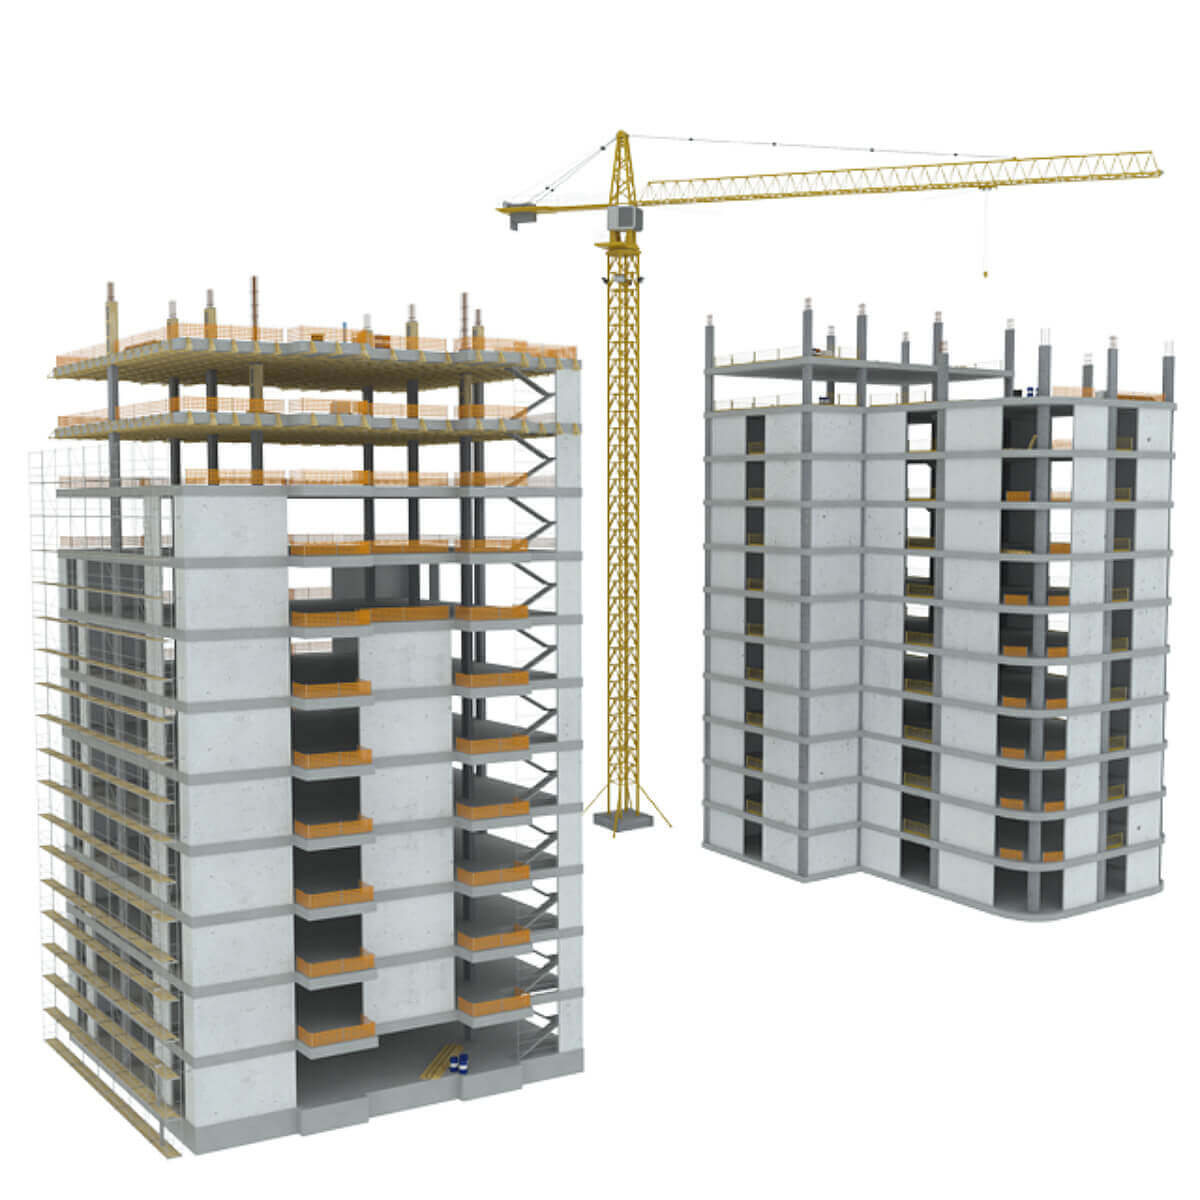 正在建造中的房子3D模型（FBX,MAX）插图